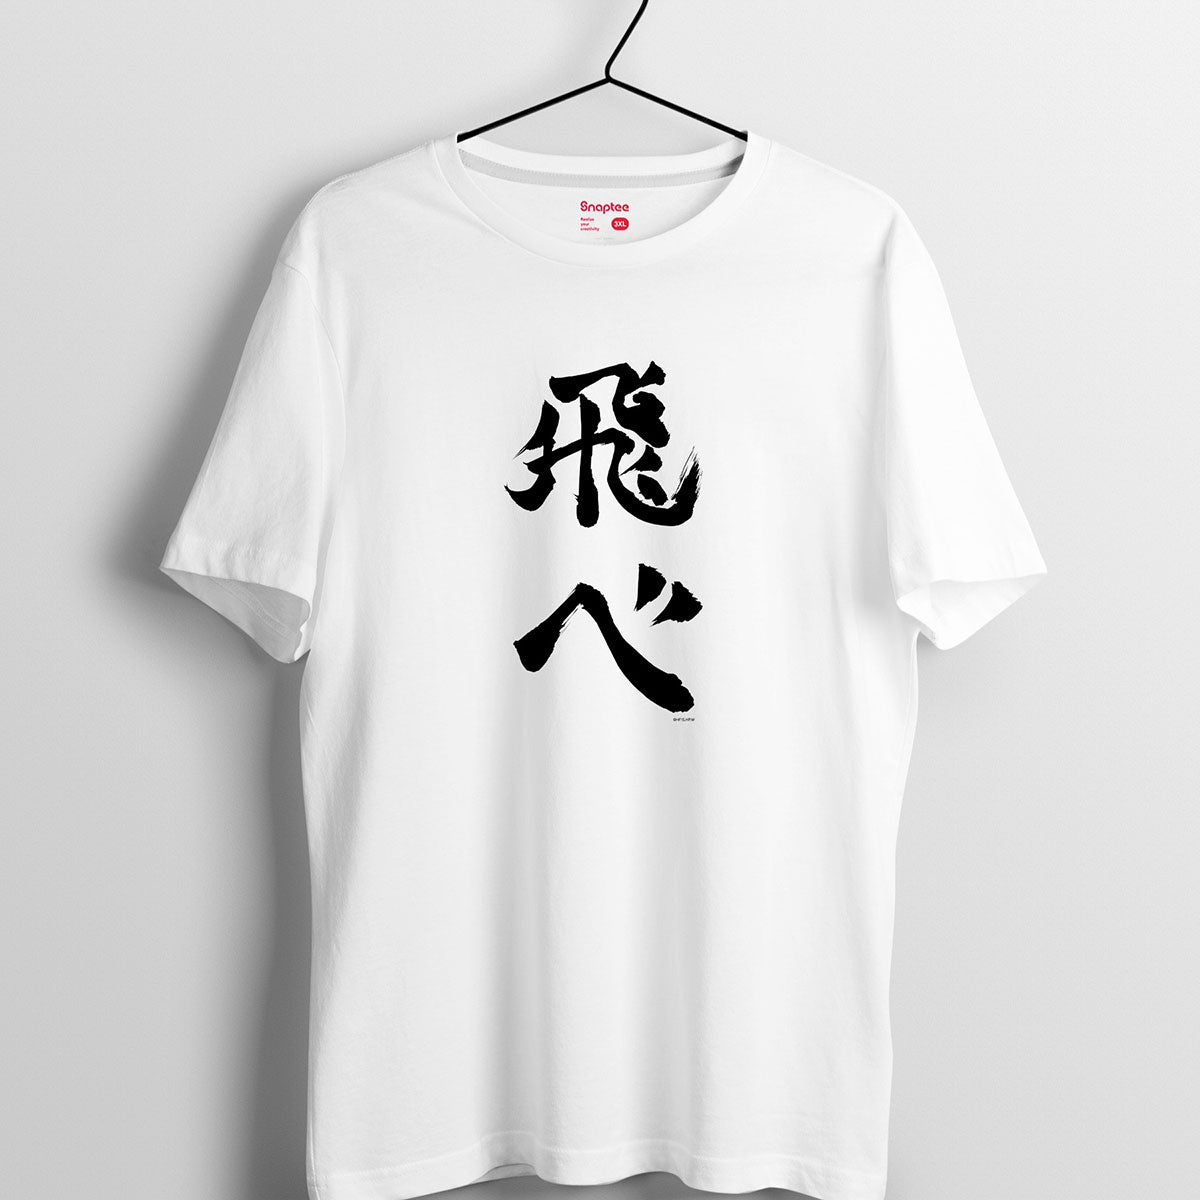 排球少年 T-shirt 飛吧 服裝 Microworks Online Store